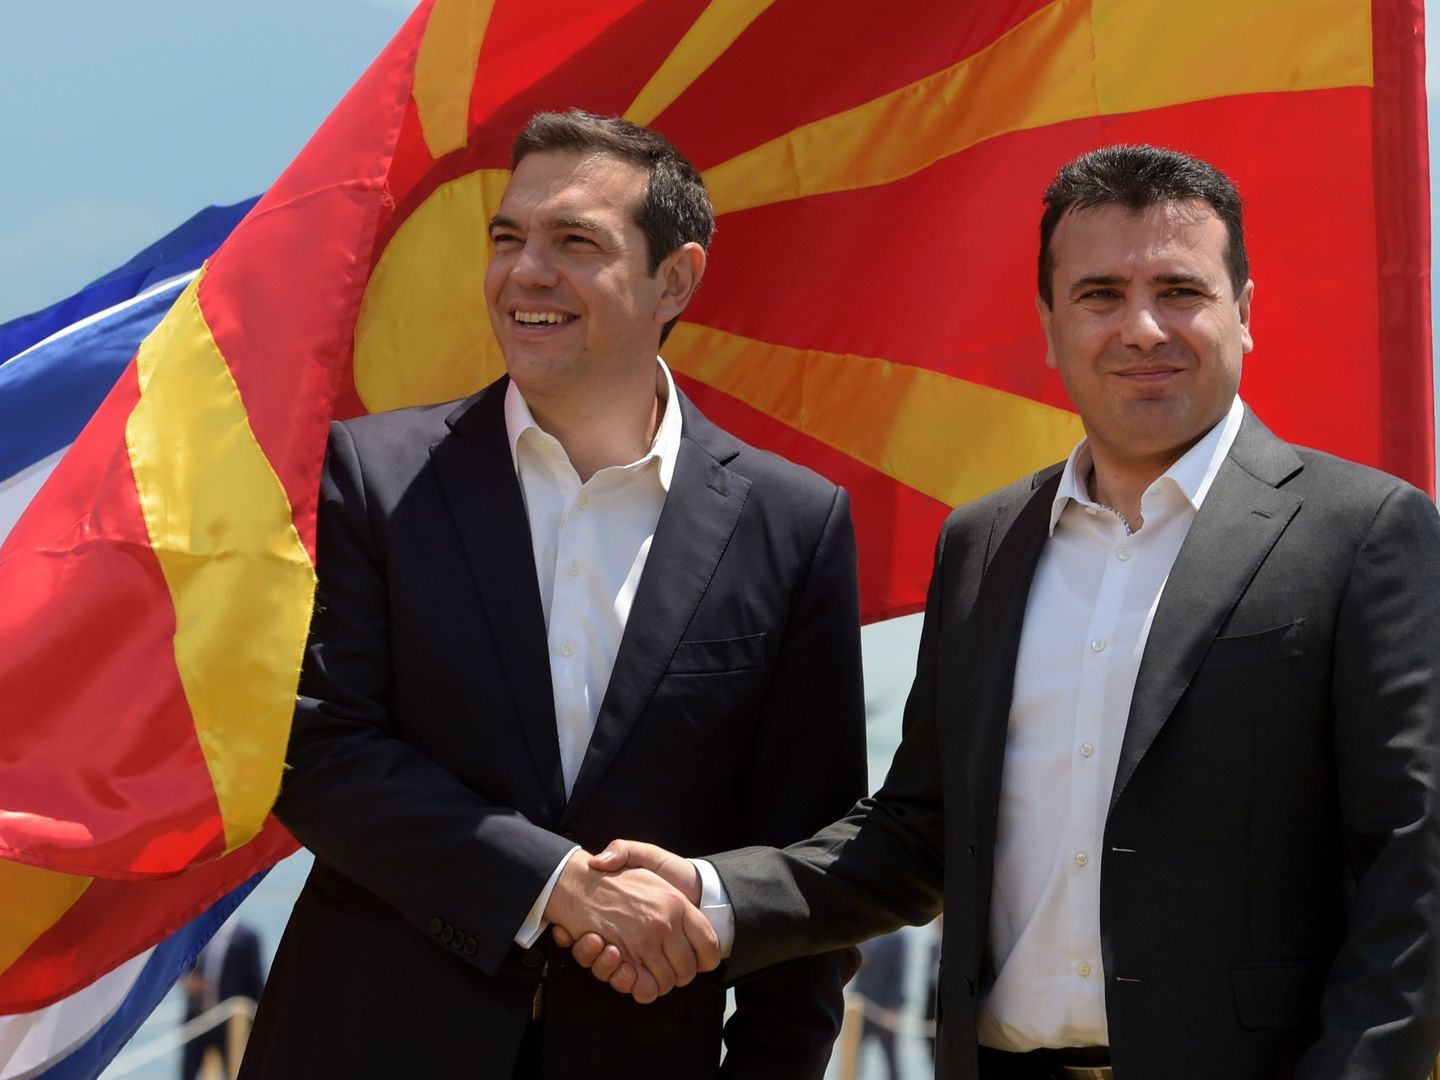 El primer ministro griego Alexis Tsipras y el macedonio Zoran Zaev durante la firma del acuerdo en el lago Prespa, cerca de Otesevo, el 17 de junio de 2018. (EFE)